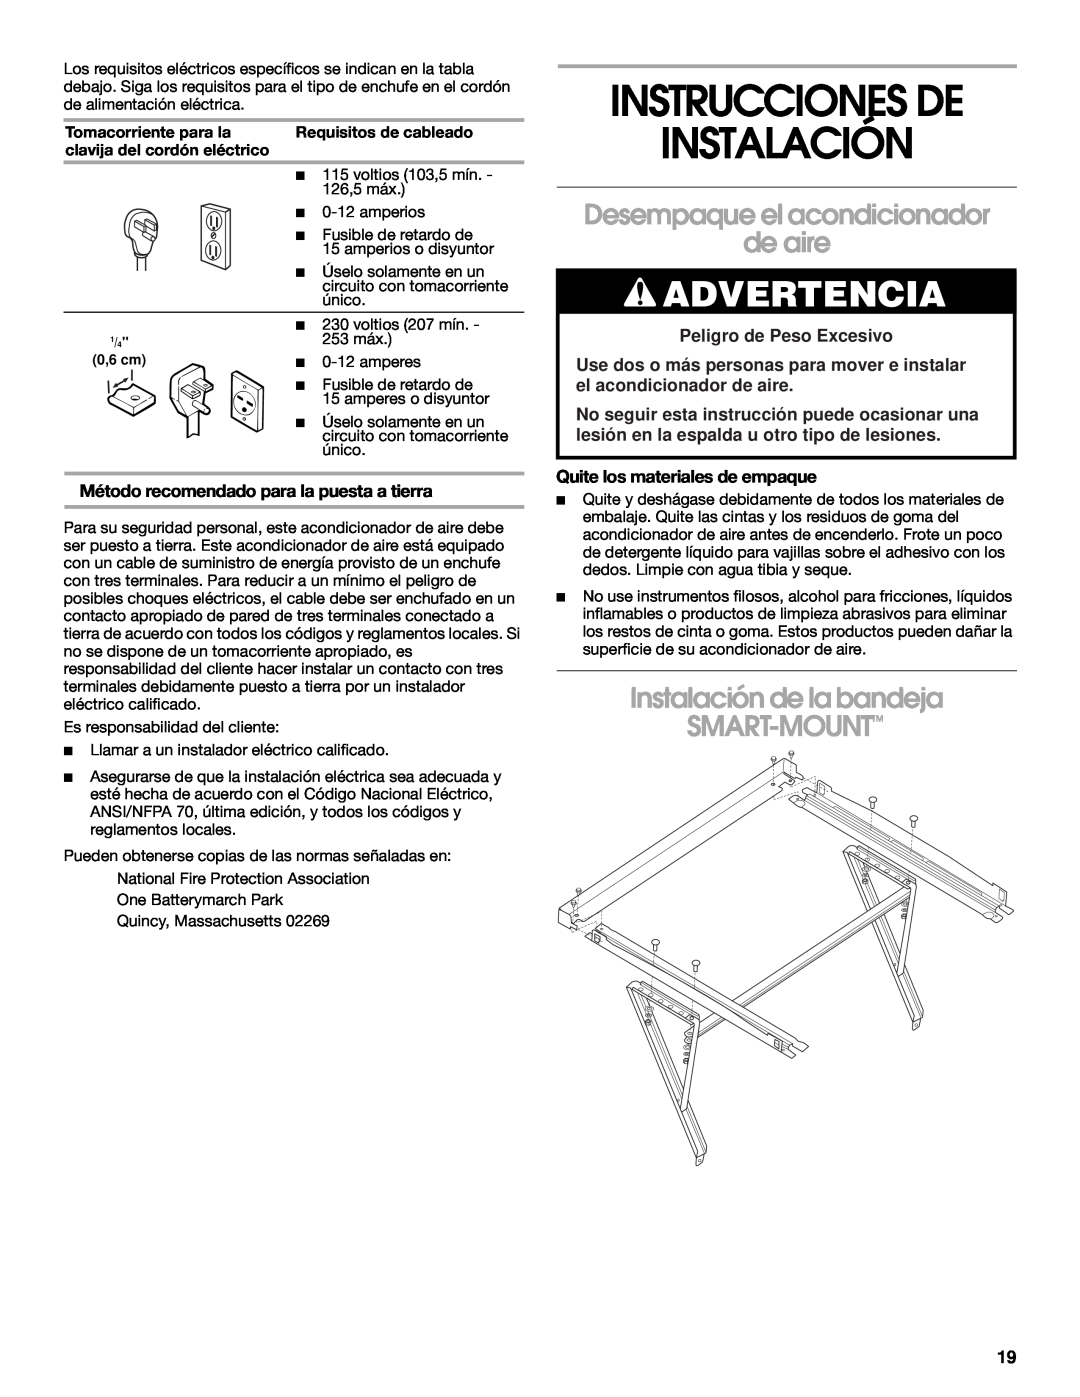 Whirlpool 1187361 manual Instrucciones De Instalación, Desempaque el acondicionador de aire, Peligro de Peso Excesivo 